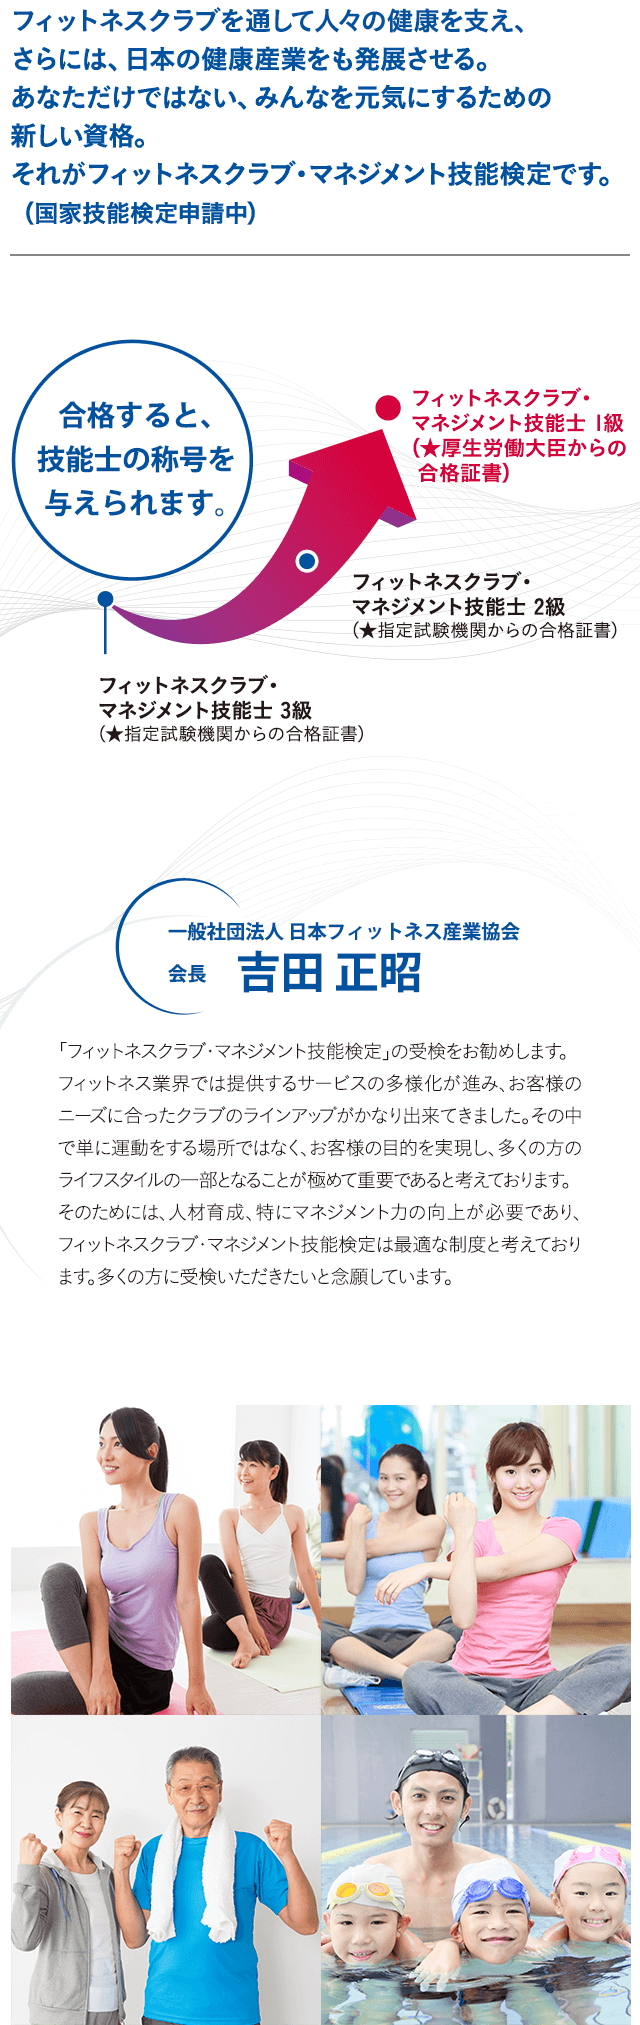 フィットネスクラブを通して人々の健康を支え、さらには、日本の健康産業をも発展させる。あなただけではない、みんなを元気にするための新しい資格。それがフィットネスクラブ・マネジメント技能検定です。 (国家技能検定申請中)